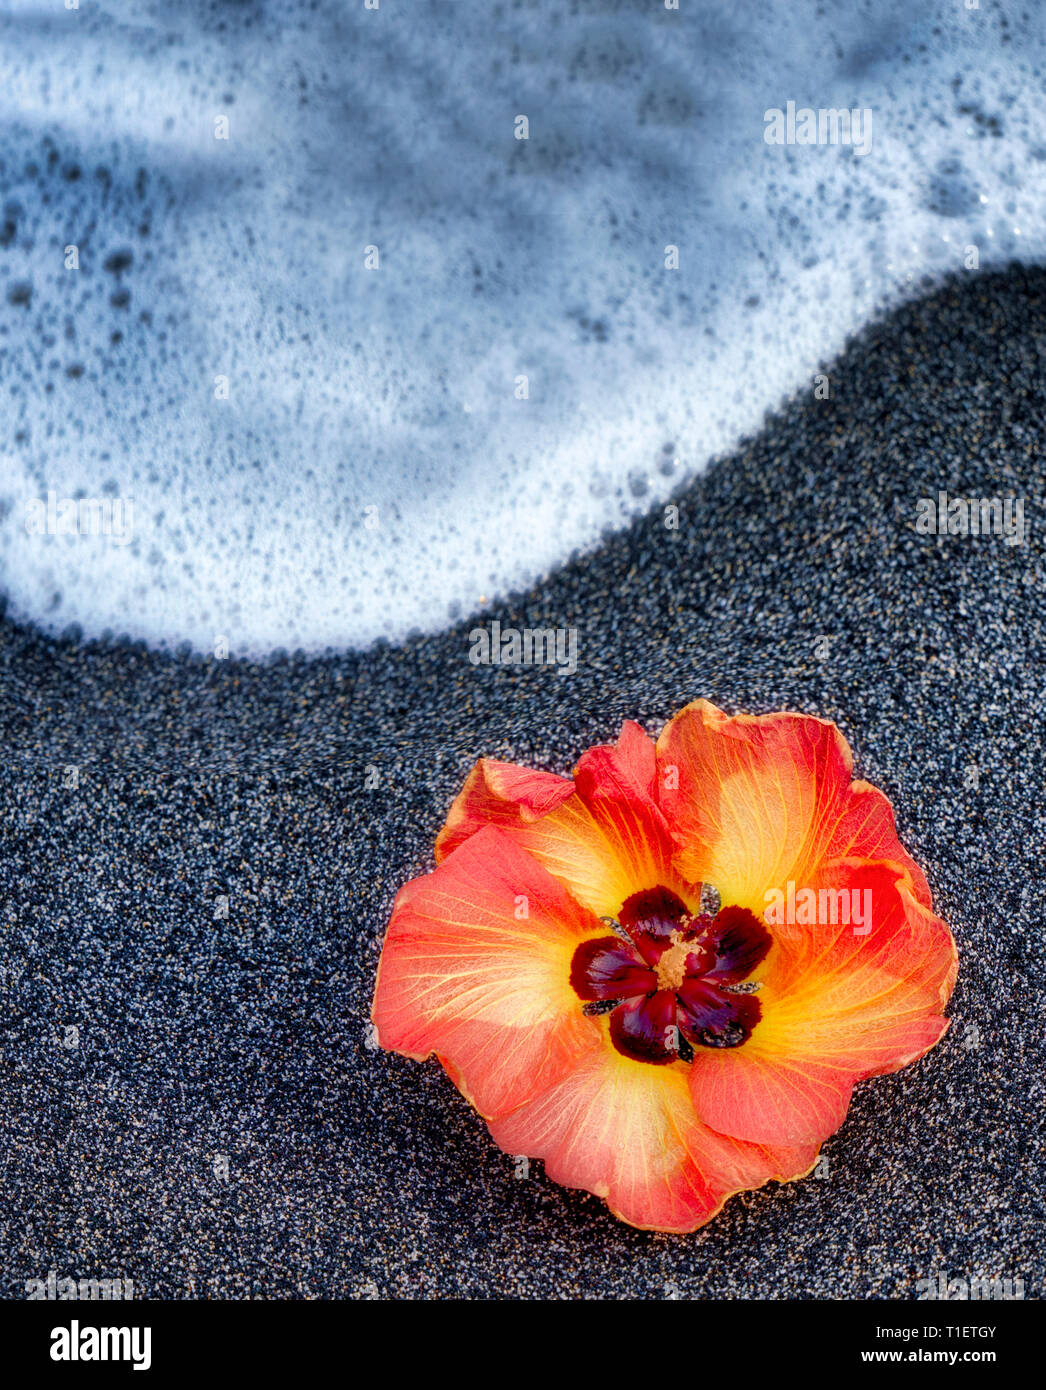 African Tulip Tree blossom sur plage de sable noir avec des vagues. New York, la Grande Île Banque D'Images